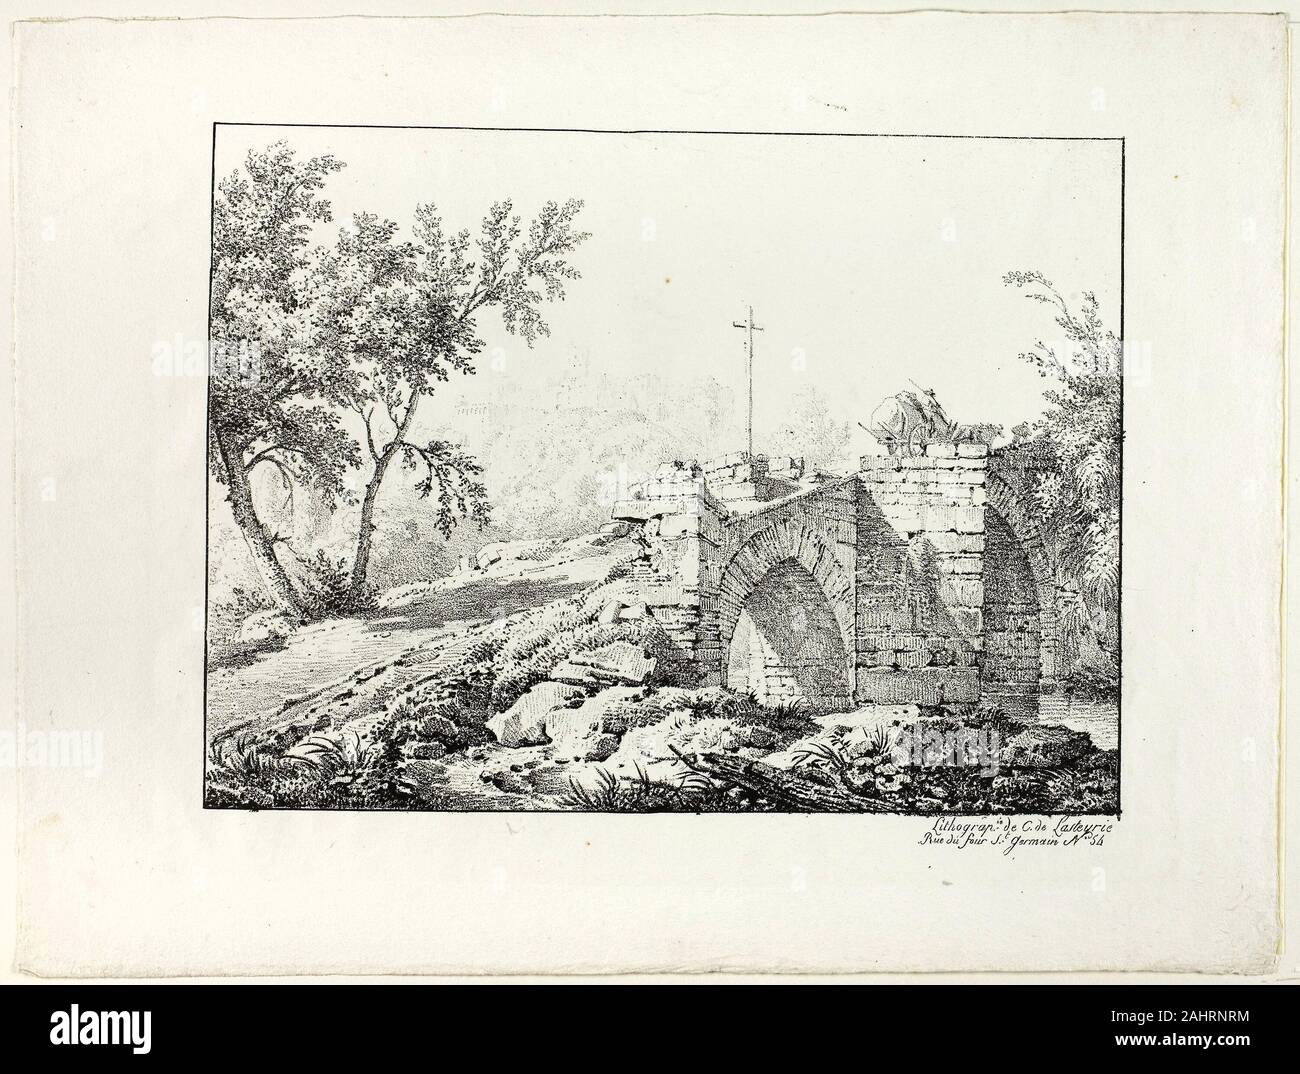 Achille Etna Michallon. Paysage avec pont. 1817. La France. Lithographie en noir sur papier vélin ivoire Banque D'Images